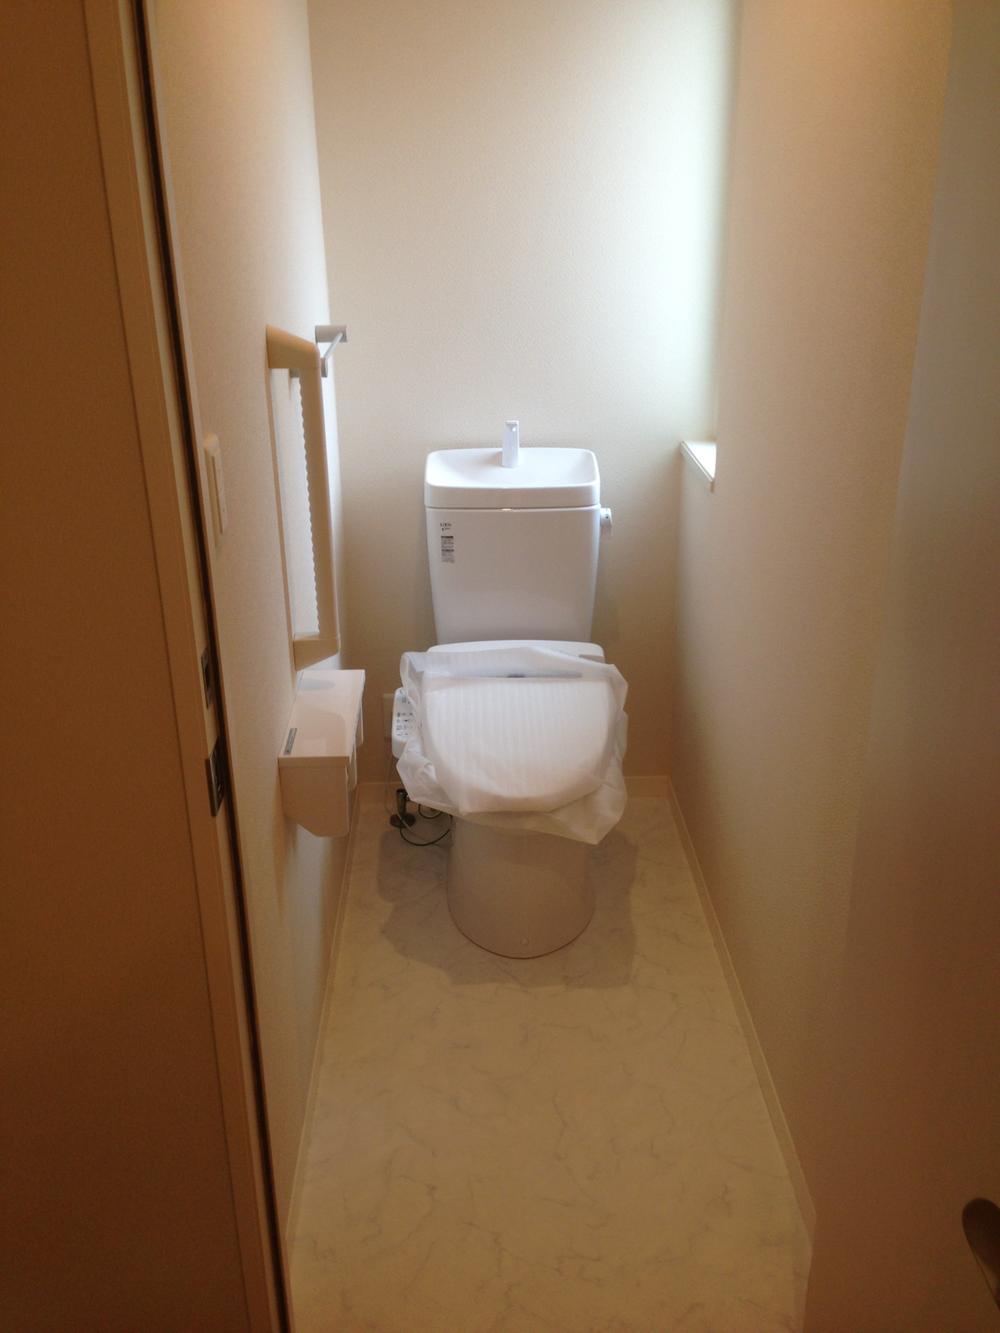 Toilet. A No. area (November 2013) Shooting